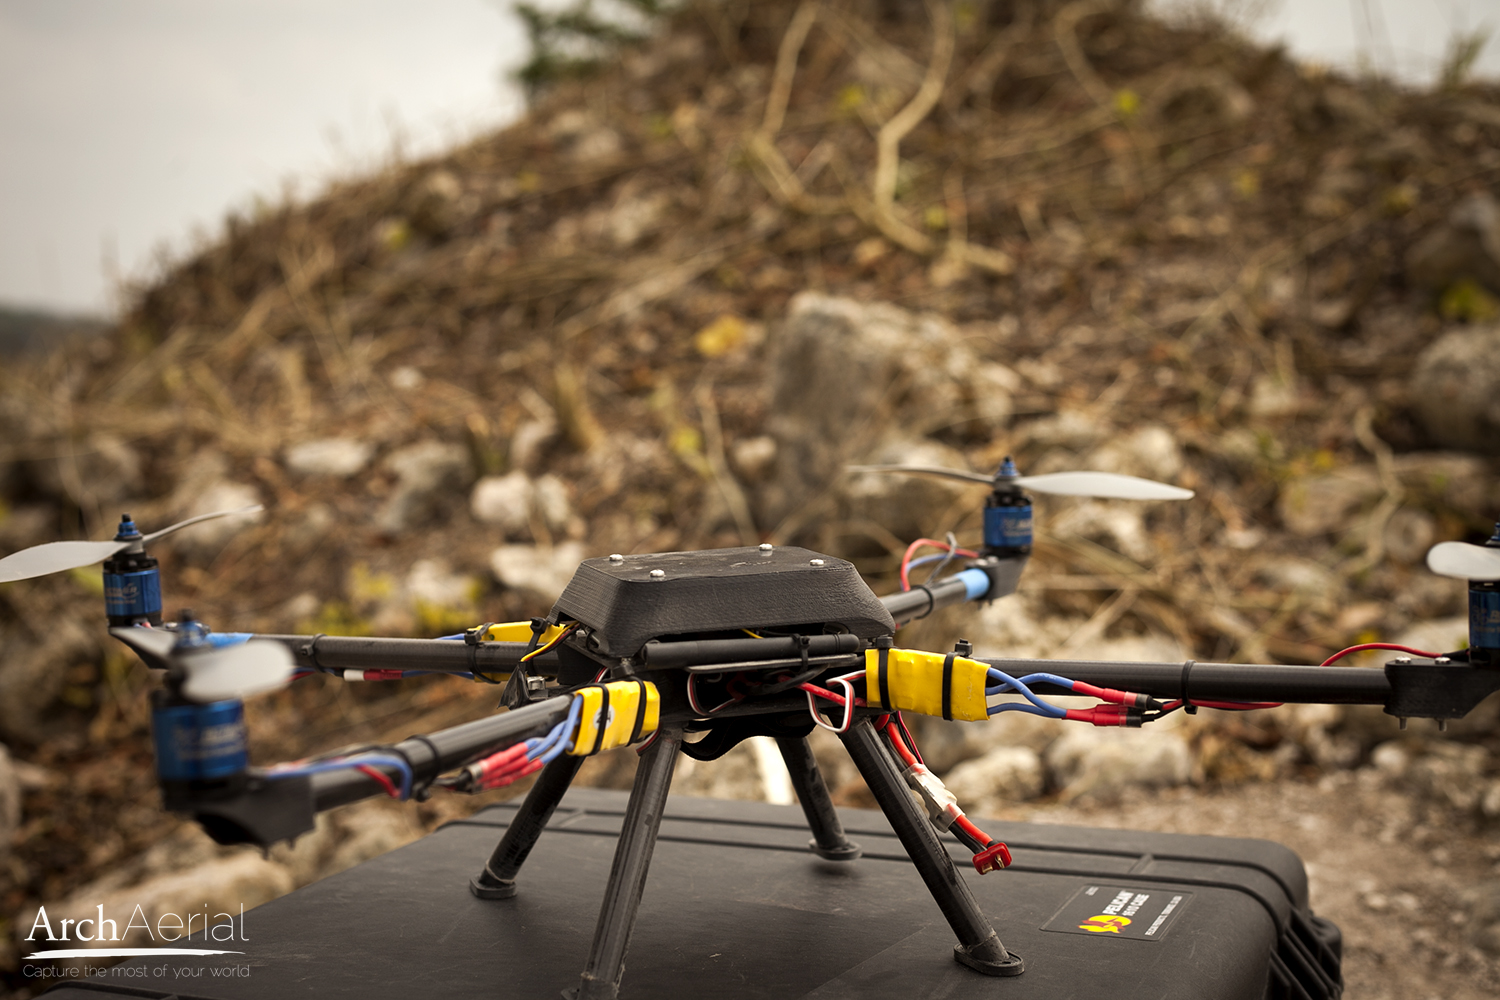 Le drone d’Arch Aerial, dont on voit ici le prototype testé durant l’été 2013, peut voler à environ&nbsp;50 km/h. © Arch Aerial